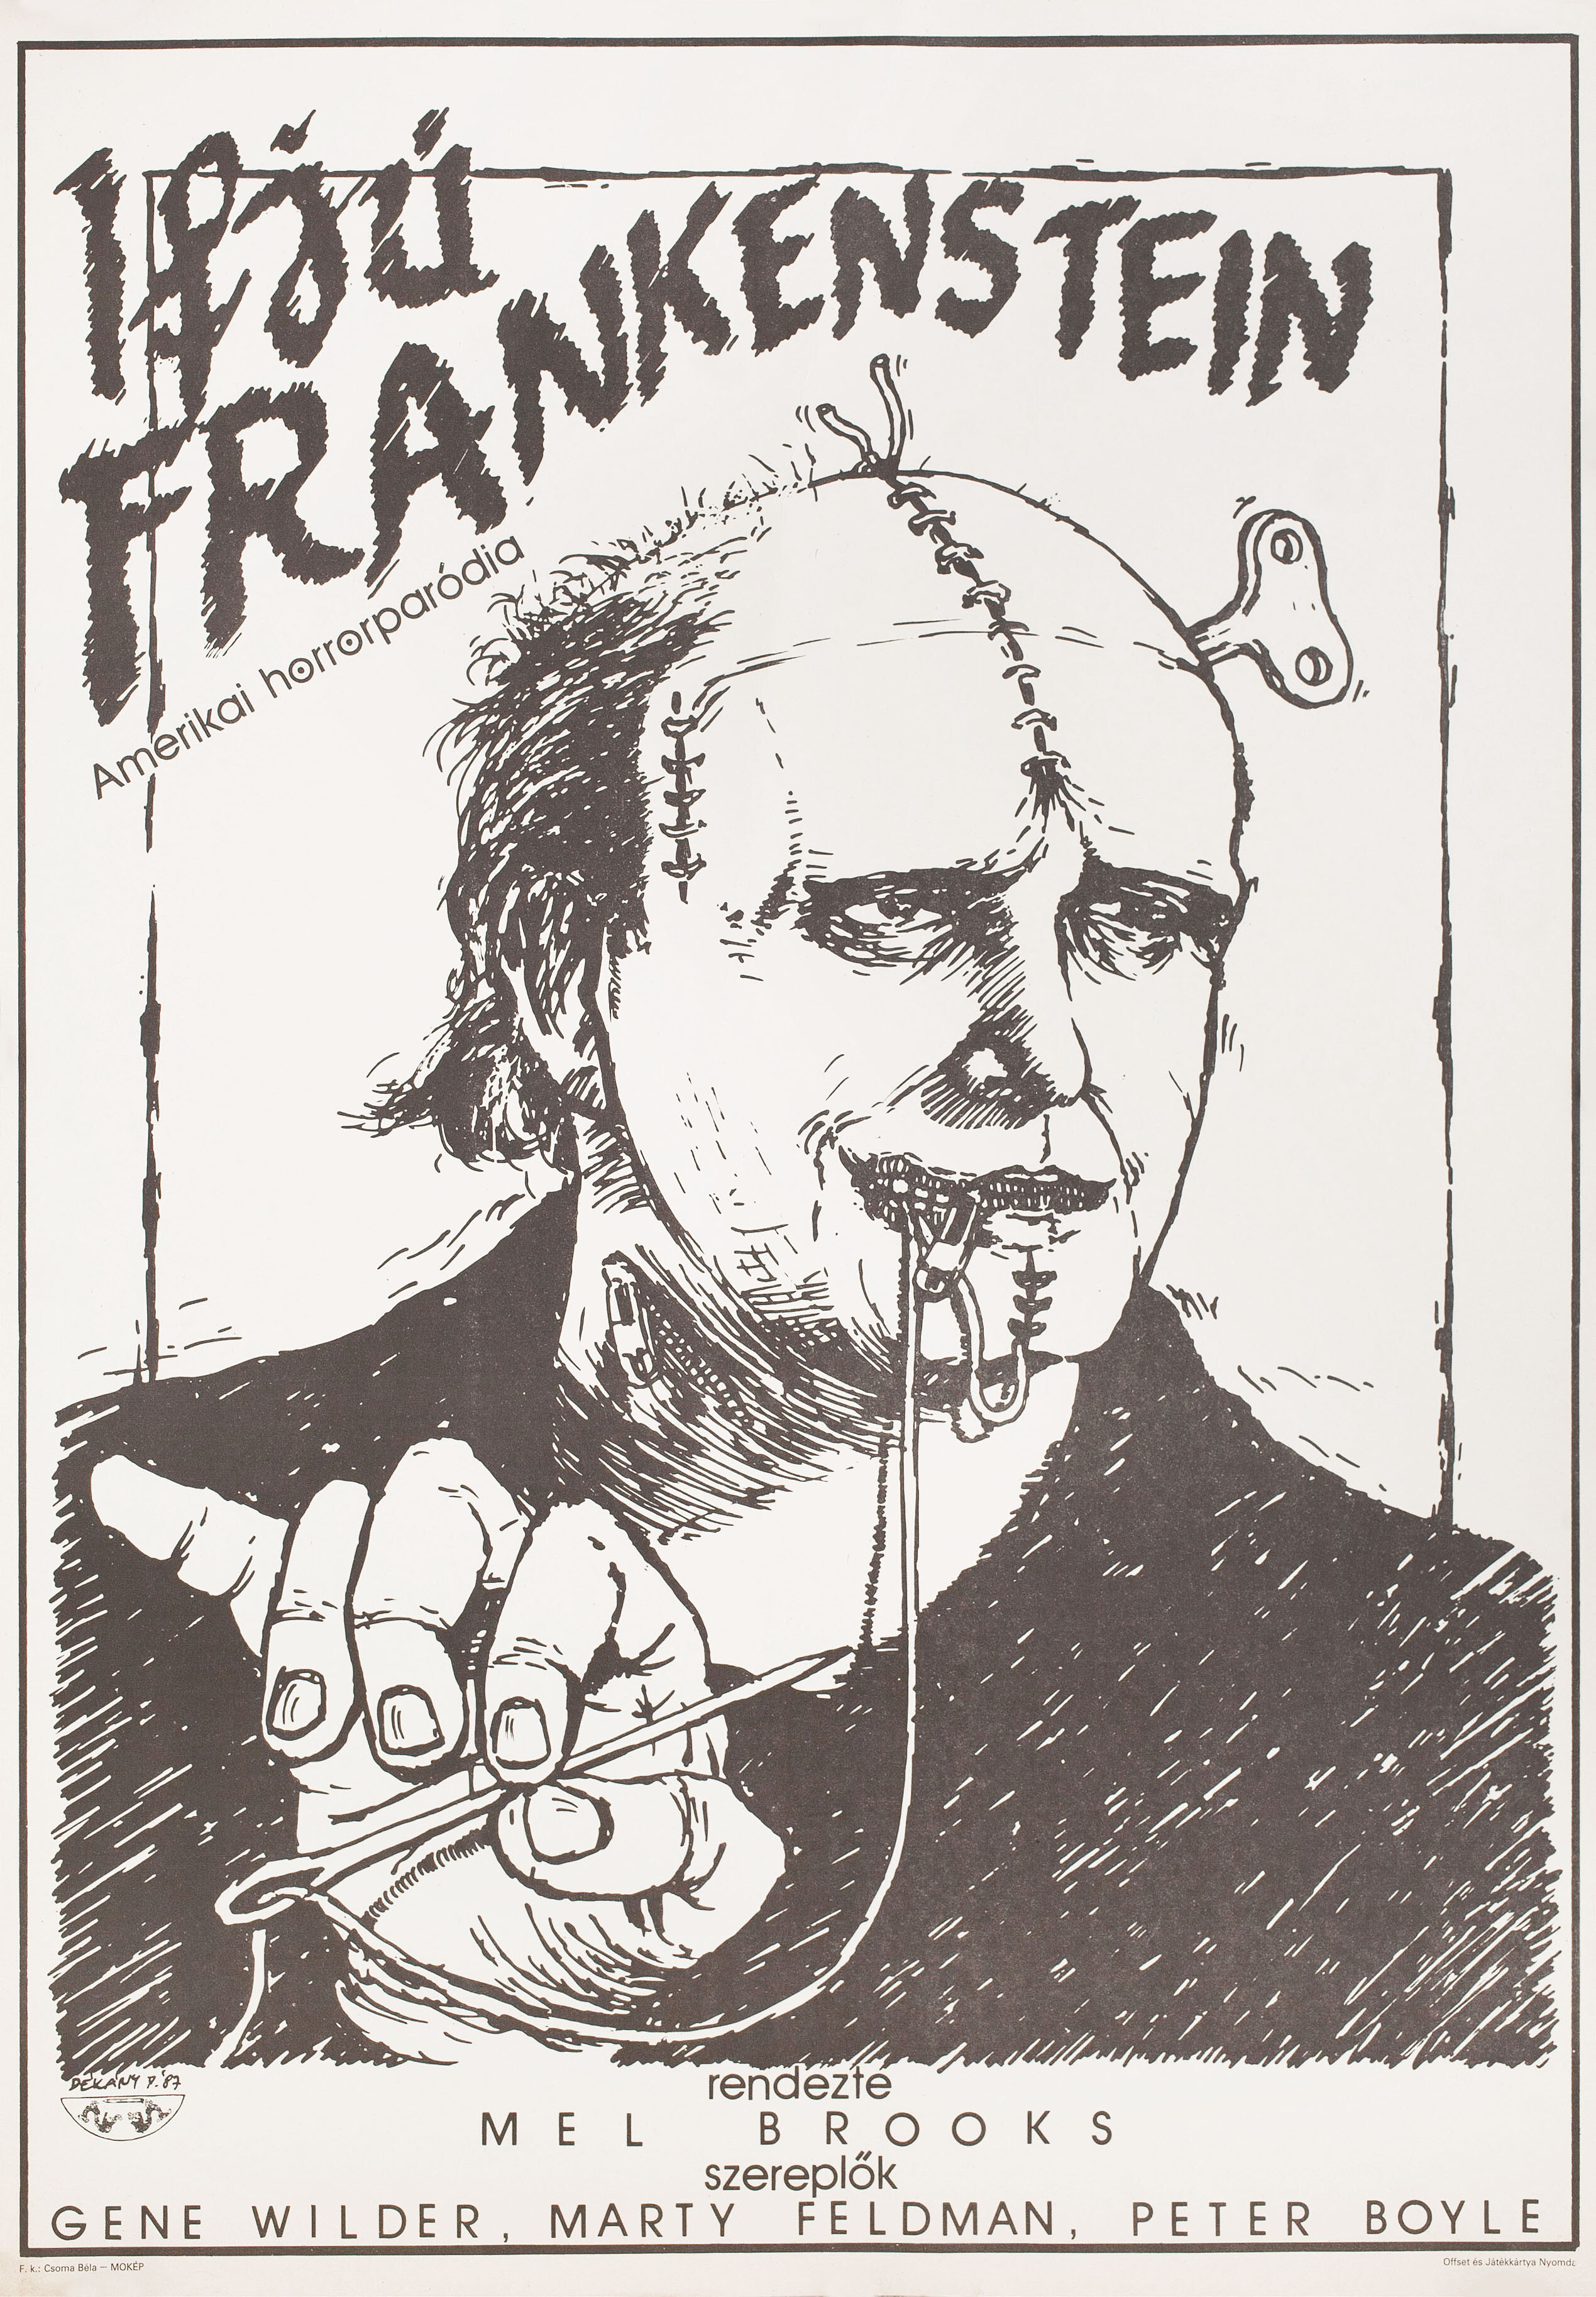 Молодой Франкенштейн (Young Frankenstein, 1974), режиссёр Мэл Брукс, венгерский постер к фильму, автор Питер Декани (монстры, 1988 год)